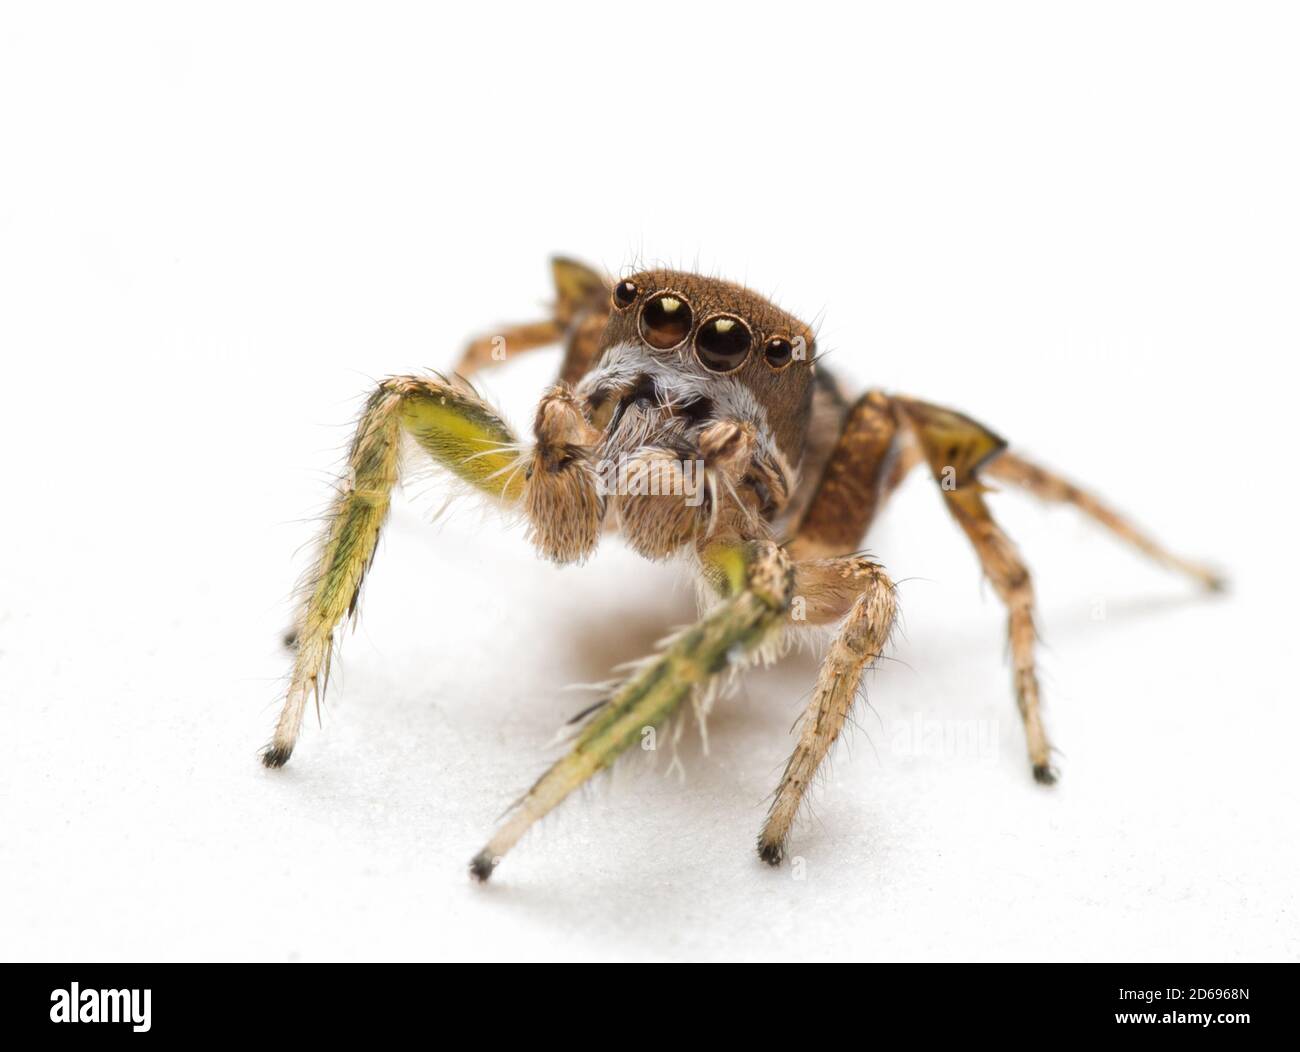 Le beau mâle Habronattus viripides sautant l'araignée avec ses pedipalps flous devant sa bouche, regardant vers le haut, sur fond clair Banque D'Images